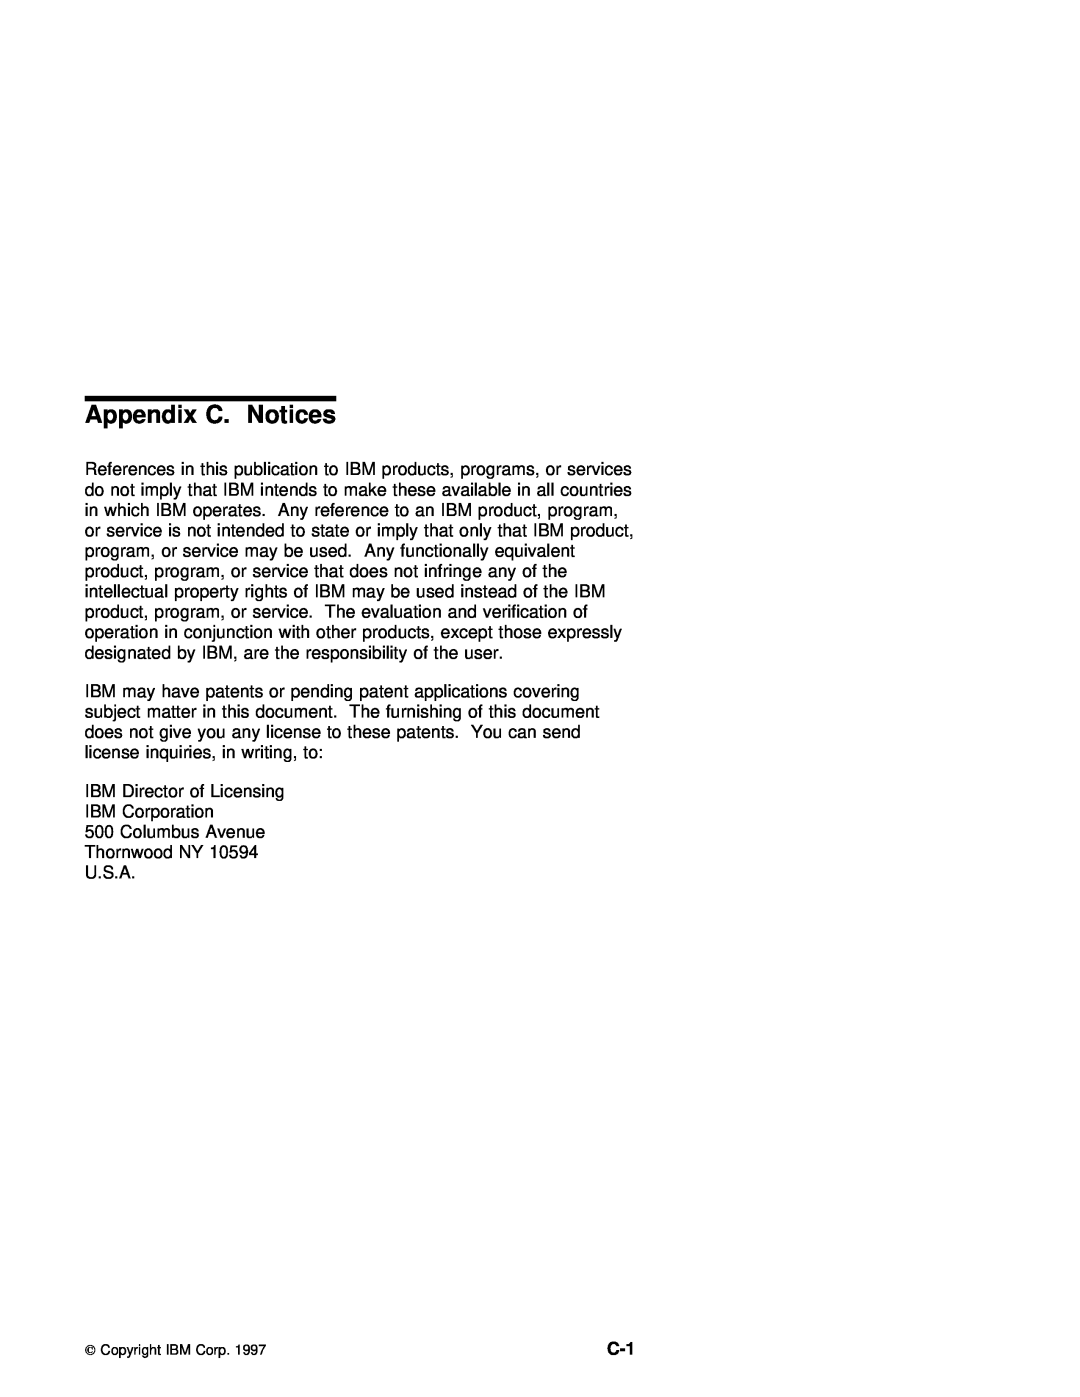 IBM 770 manual Appendix C. Notices 